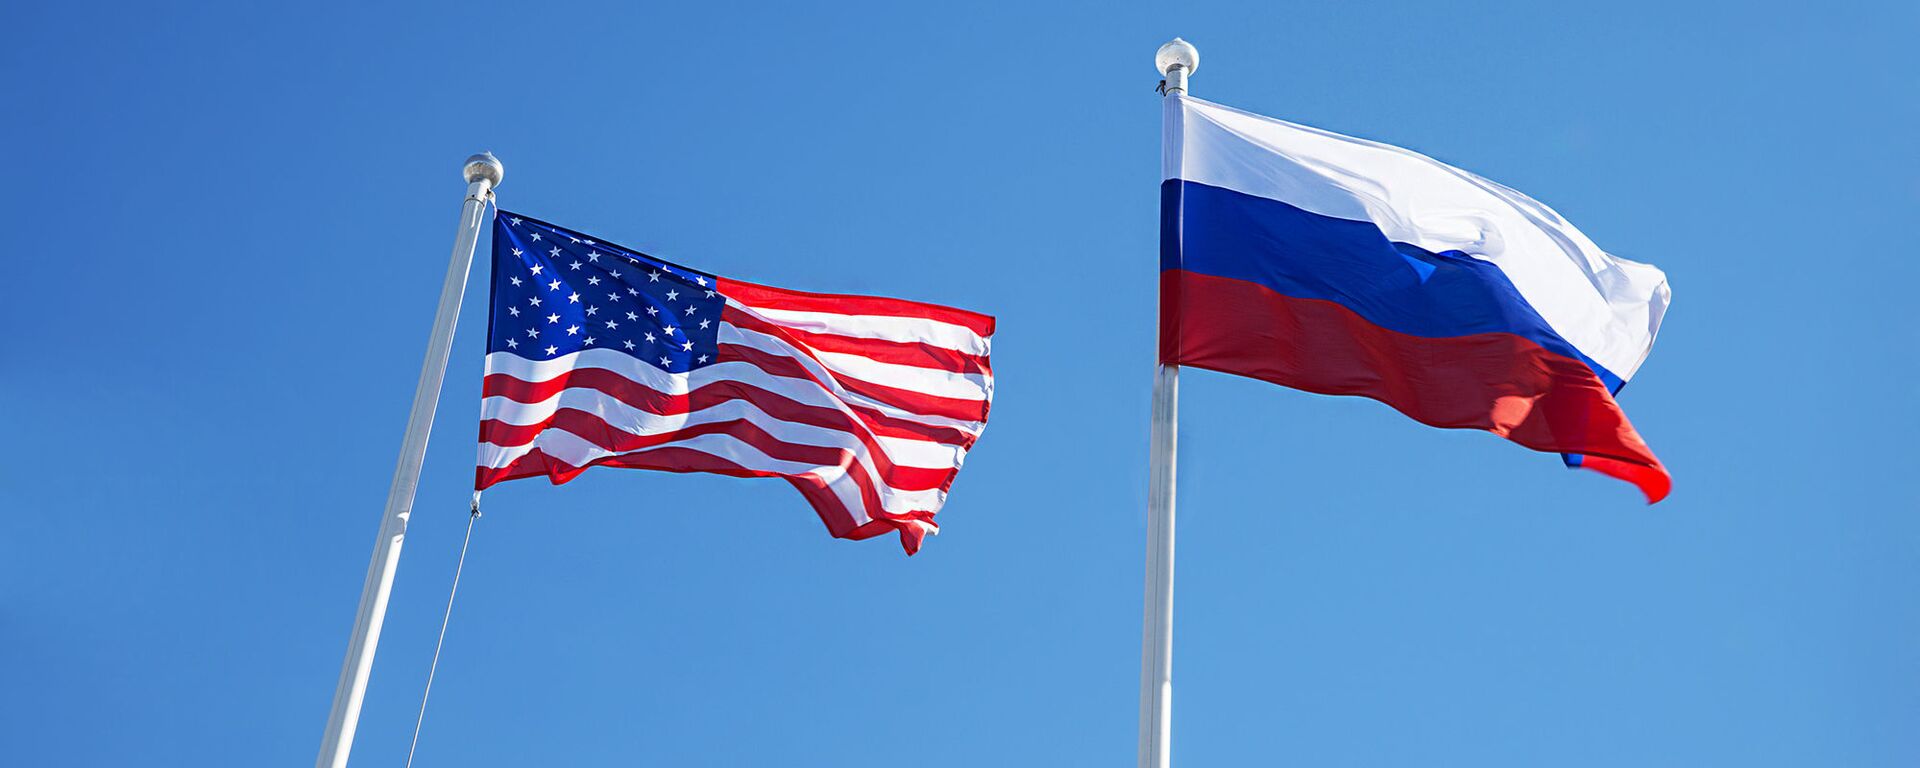 Американский и российский флаги - Sputnik Lietuva, 1920, 18.03.2021